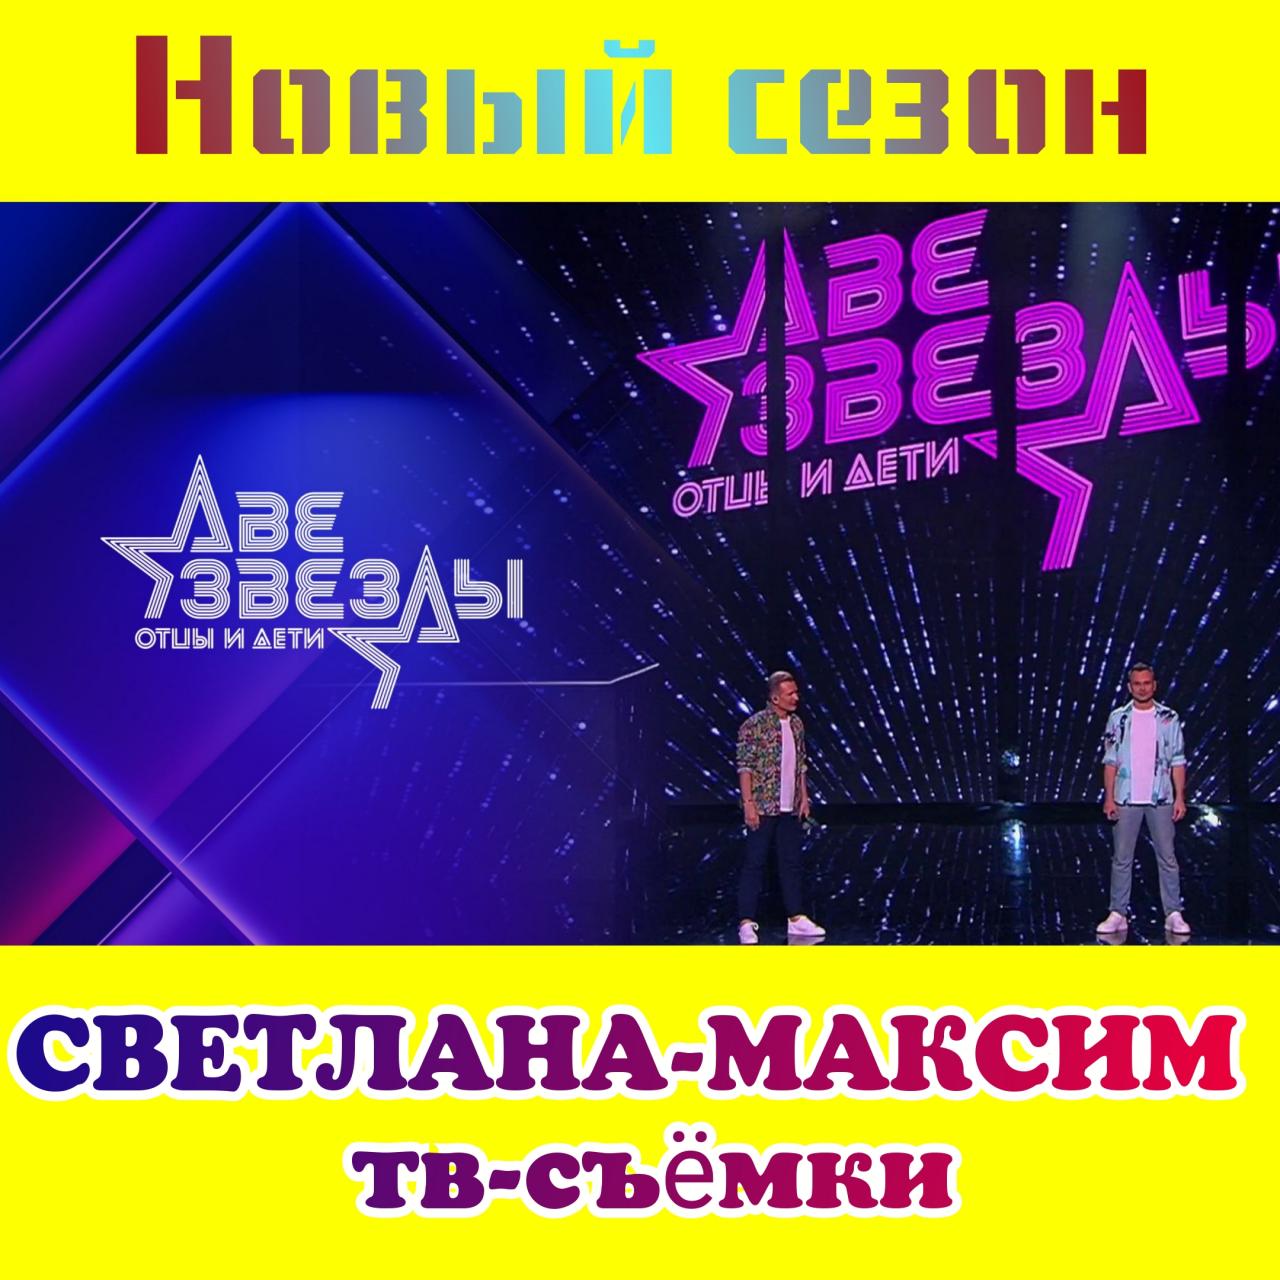 1, 2 марта музыкальное шоу "ДВЕ ЗВЕЗДЫ".